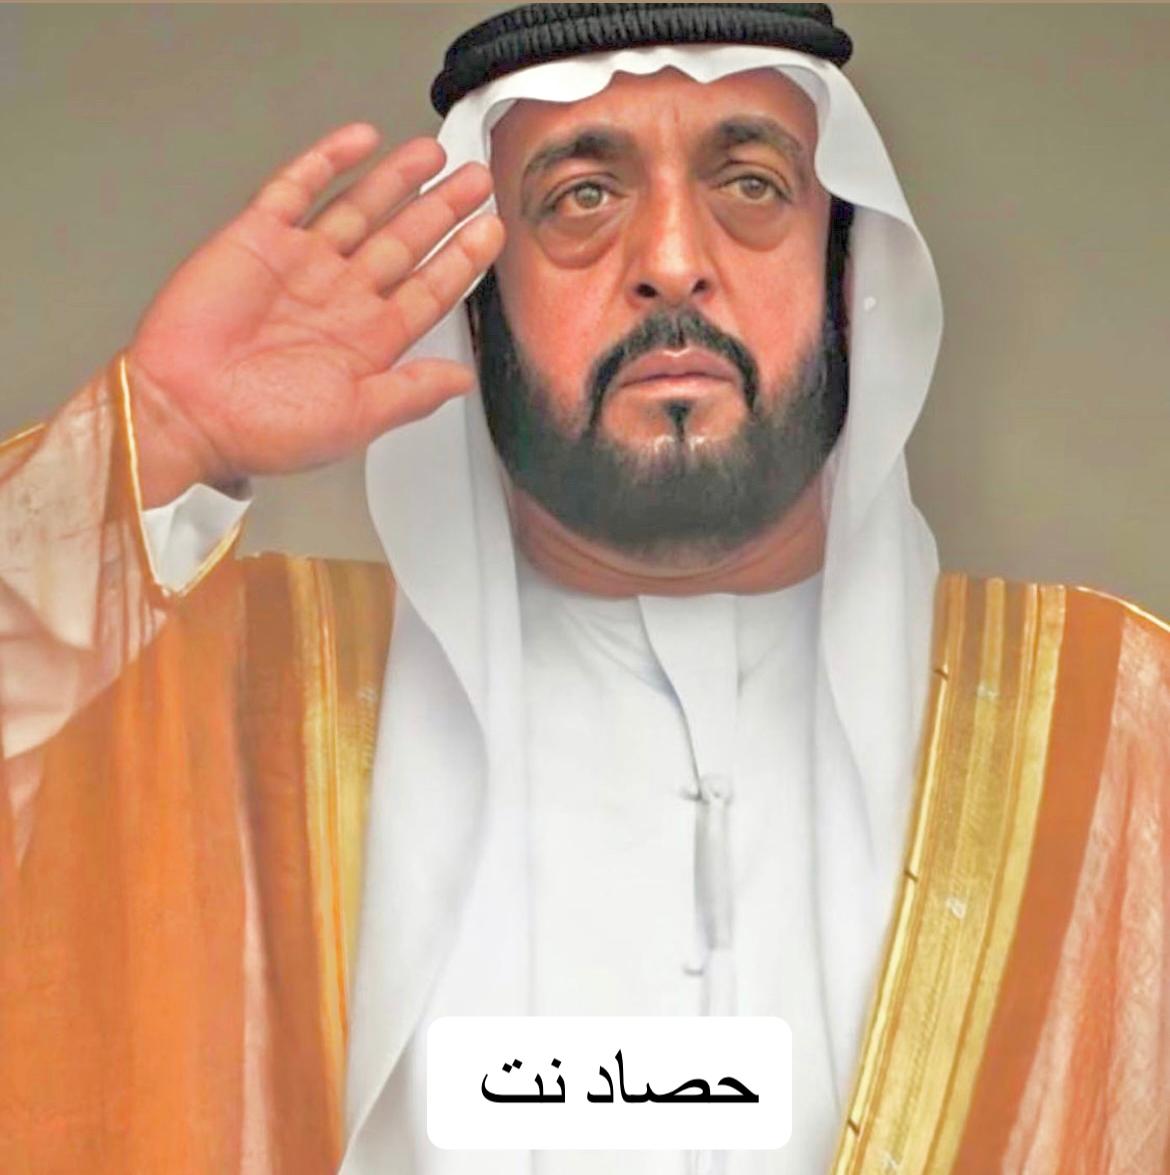 سبب وفاة خليفة بن زايد رئيس دولة الامارات